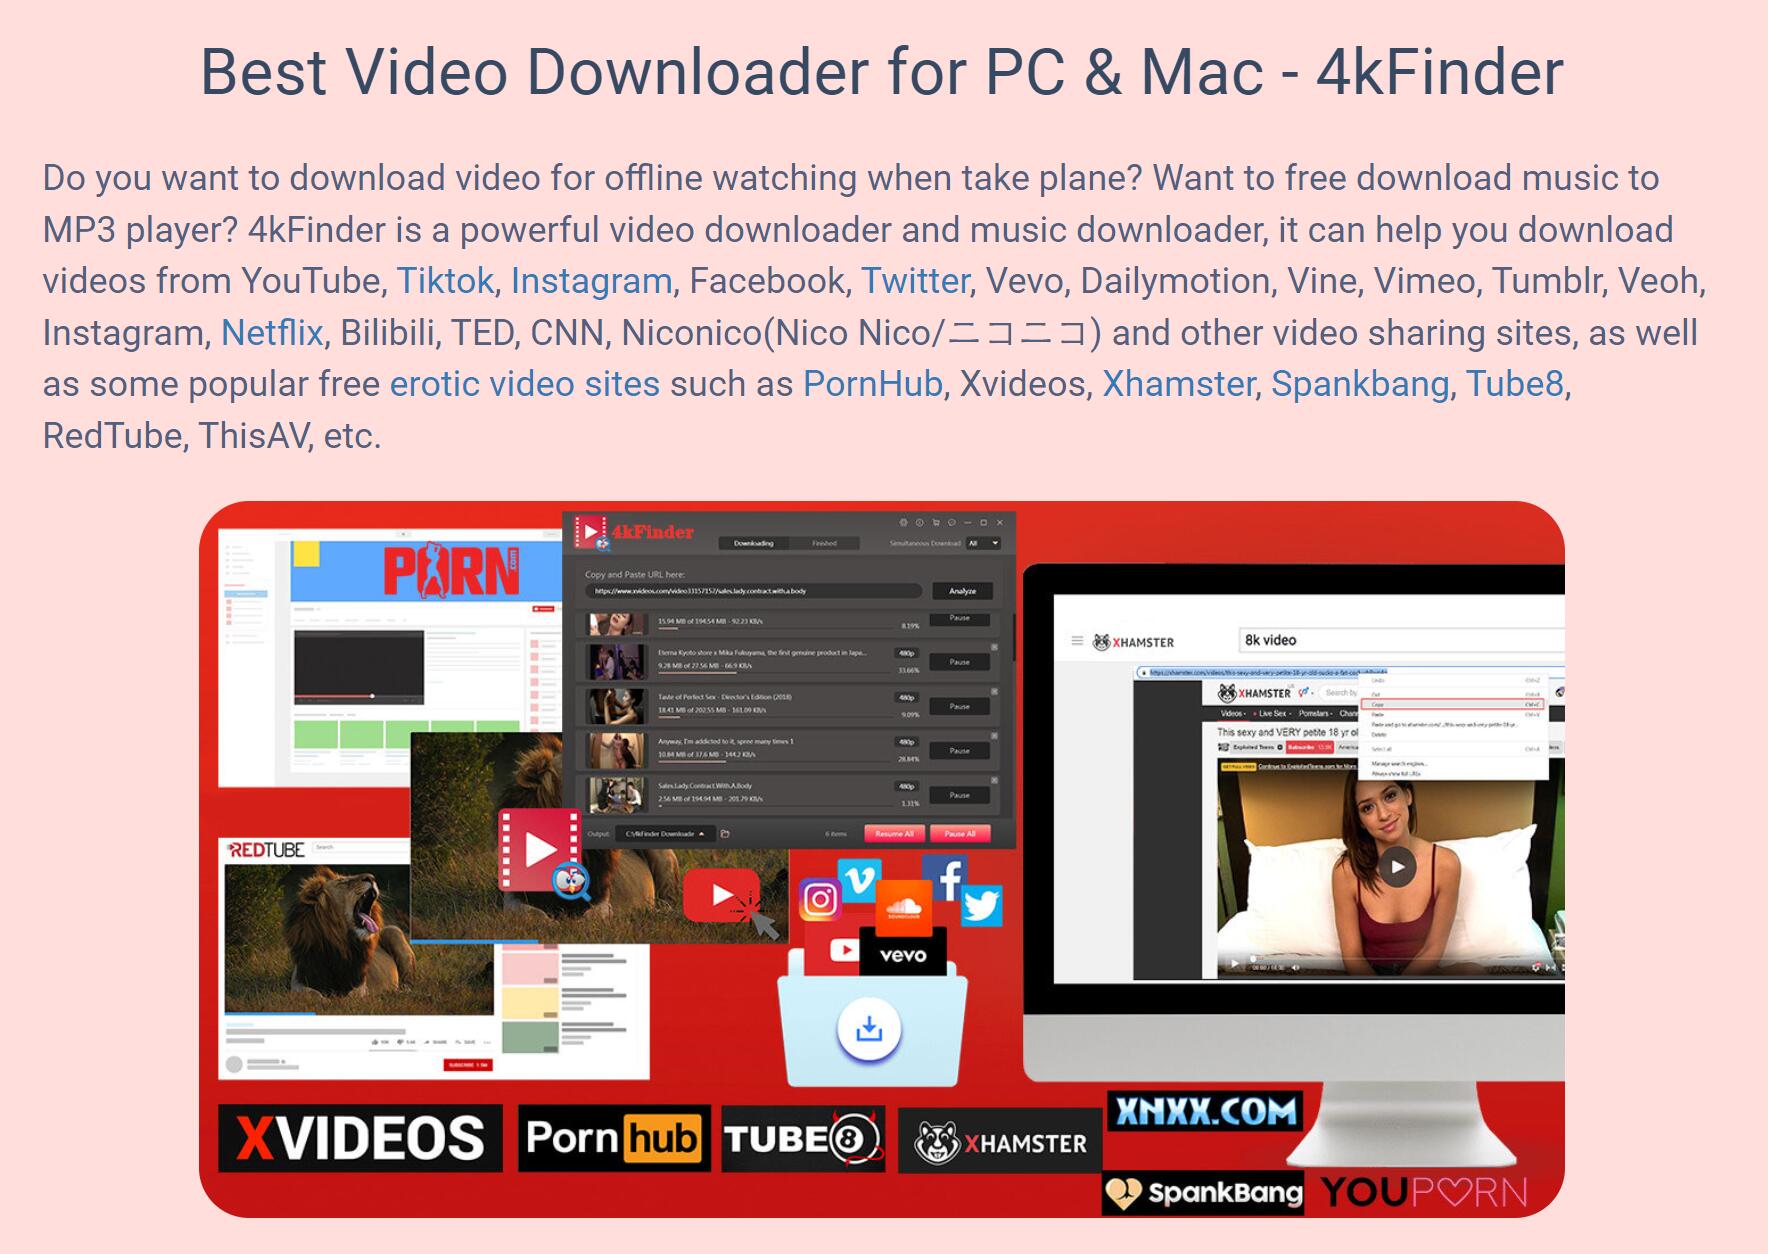 4kFinder 4kfinder video downloader supports sites